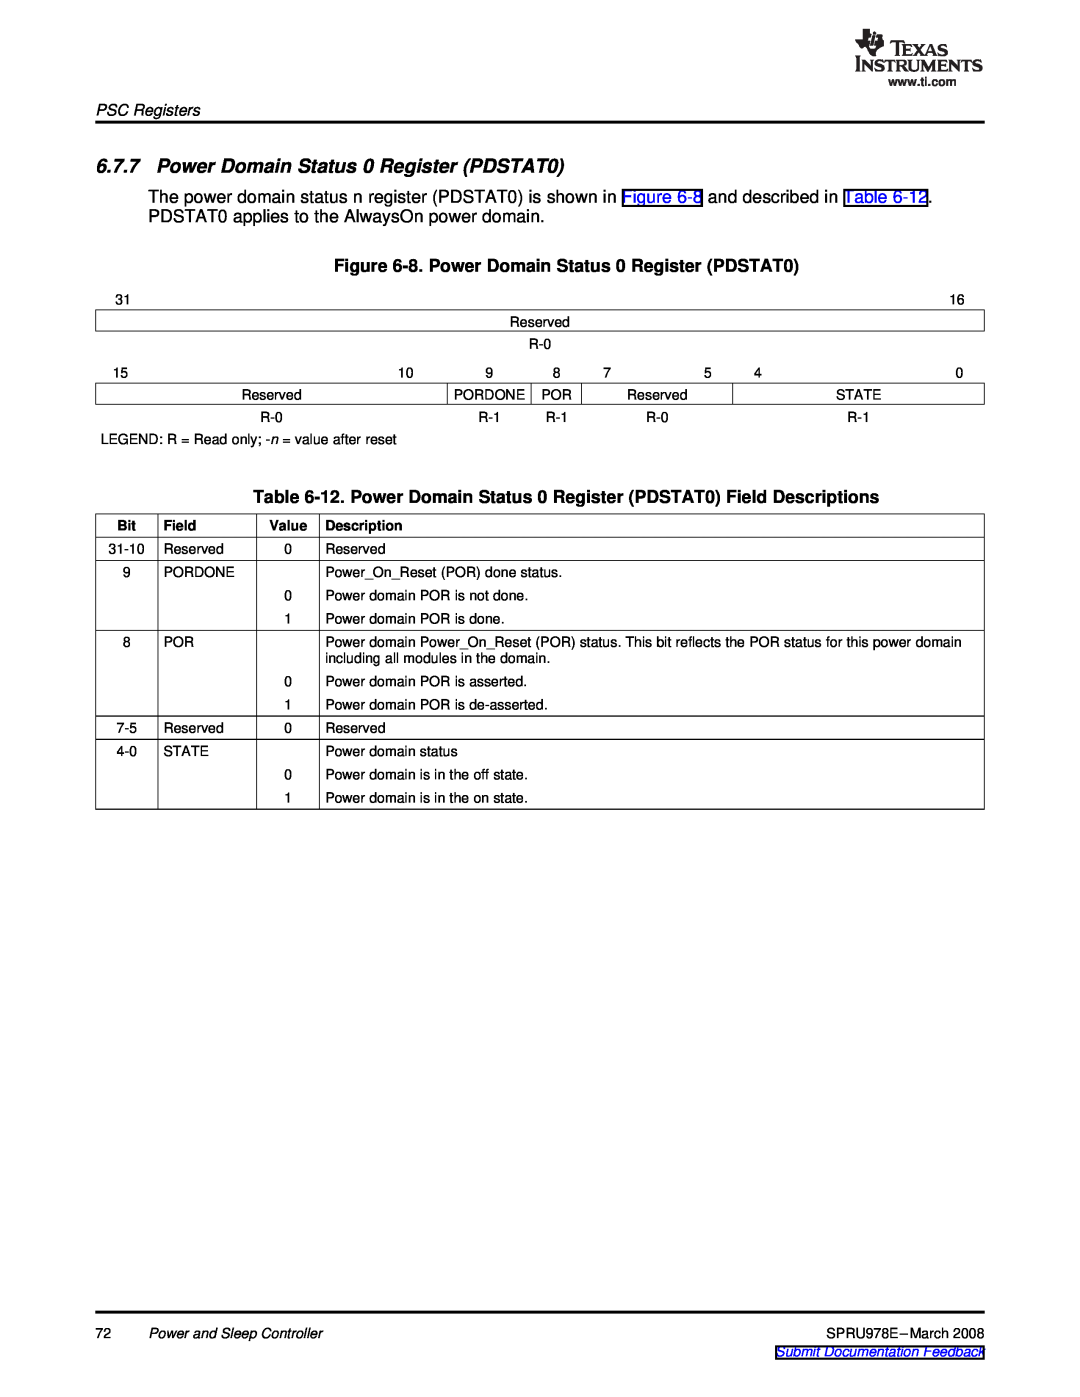 Texas Instruments TMS320DM643x manual 8. Power Domain Status 0 Register PDSTAT0, PSC Registers, Field, Description 